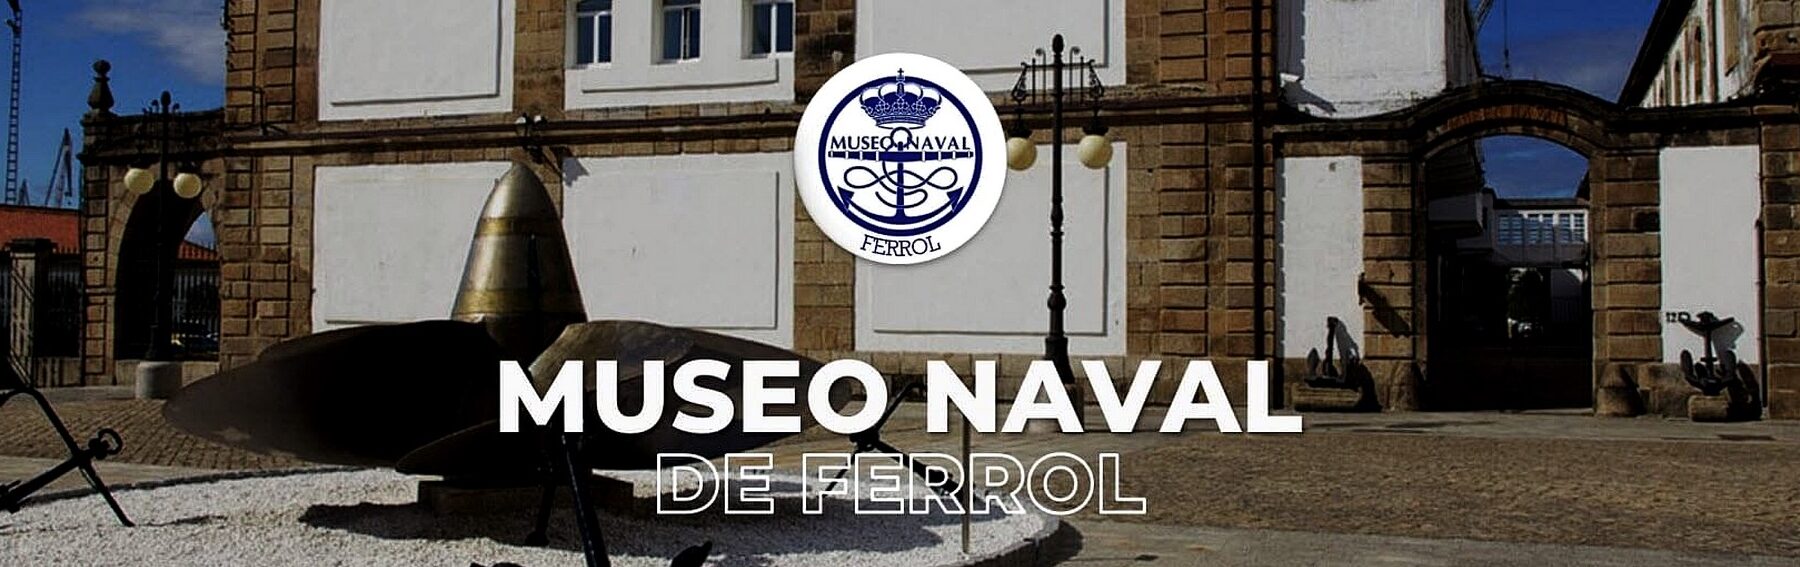 MUSEO NAVAL DE FERROL		Ferrol	A Coruña	Museo